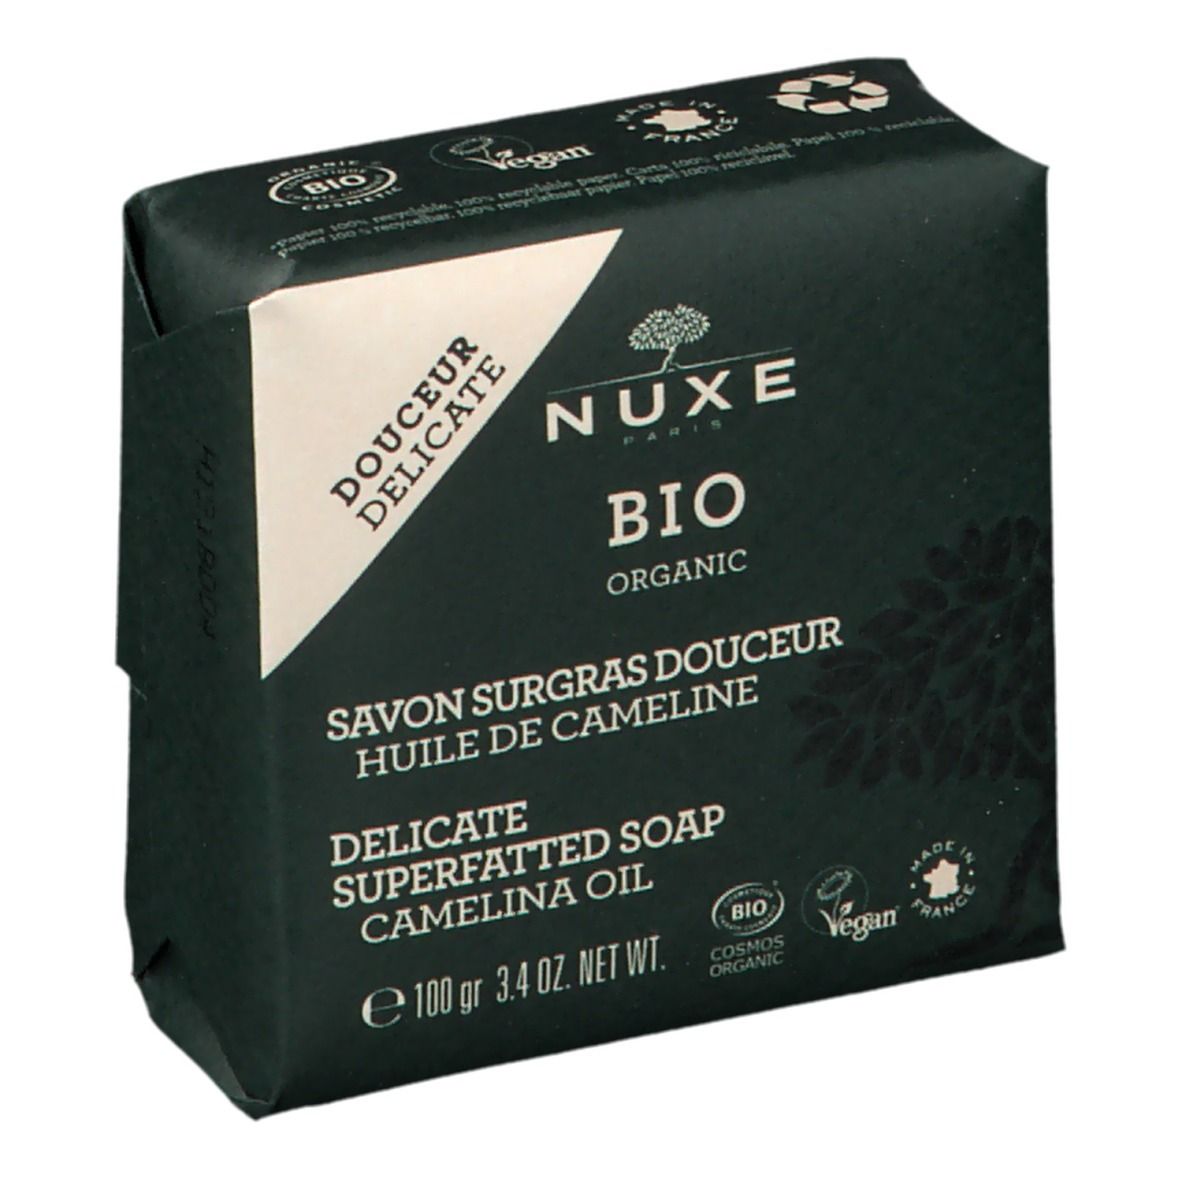 Nuxe Bio Organic Savon Surgras Douceur